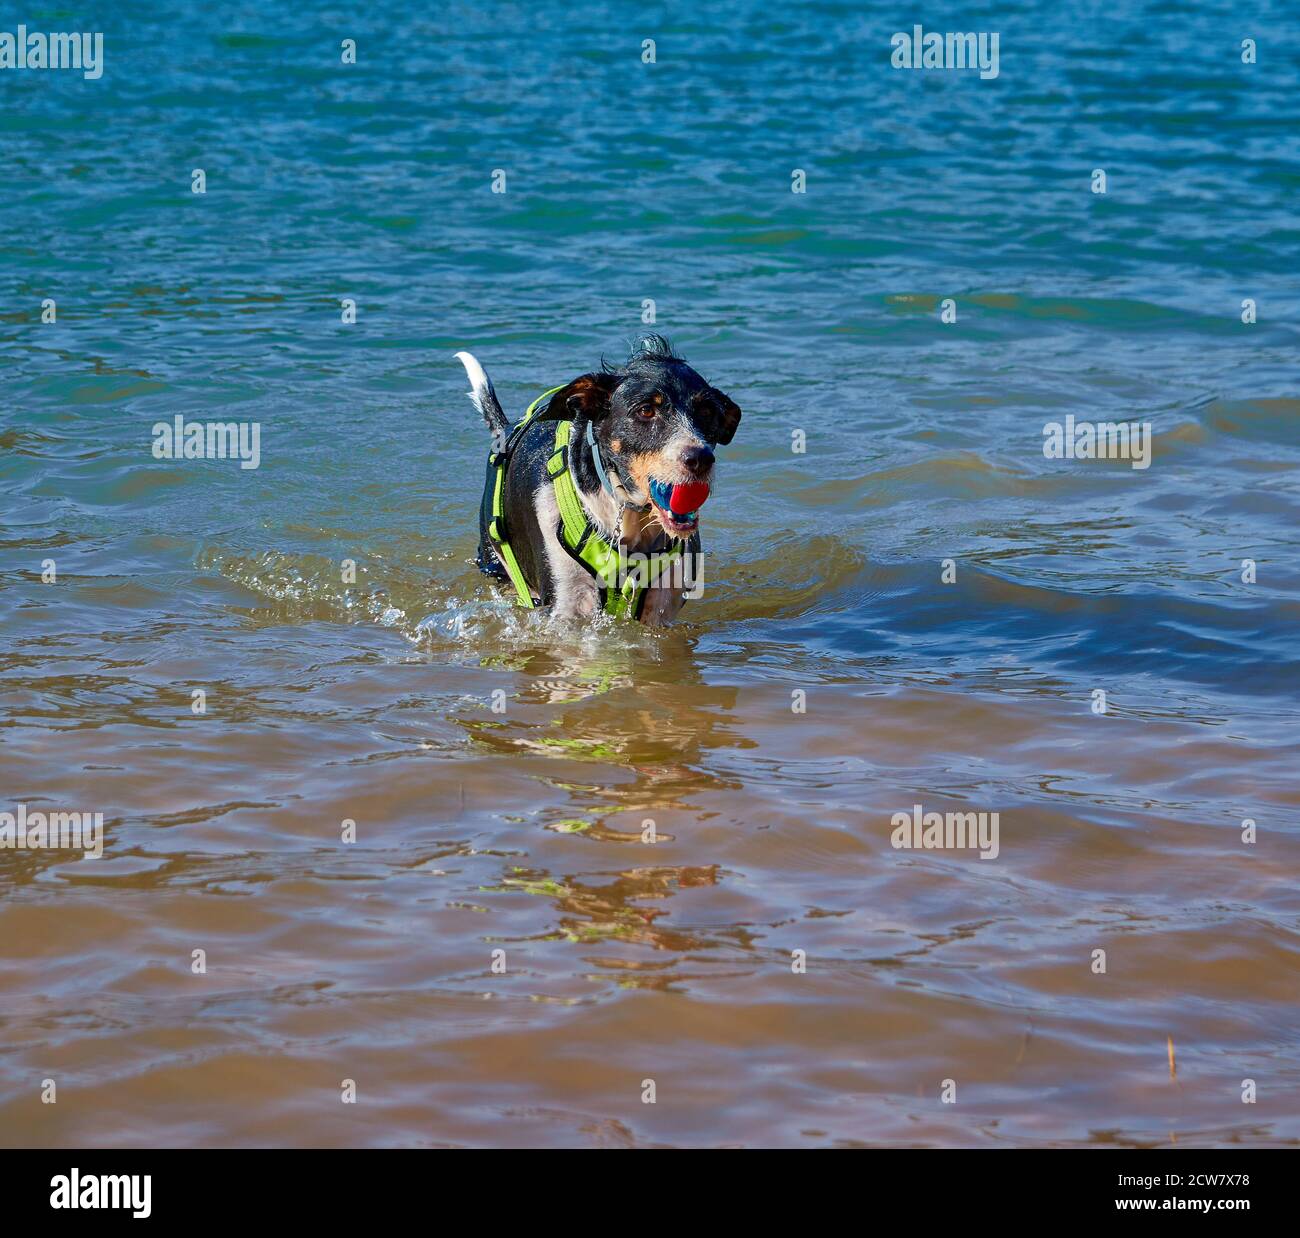 bel cane in un lago che esce dall'acqua con una palla Foto Stock